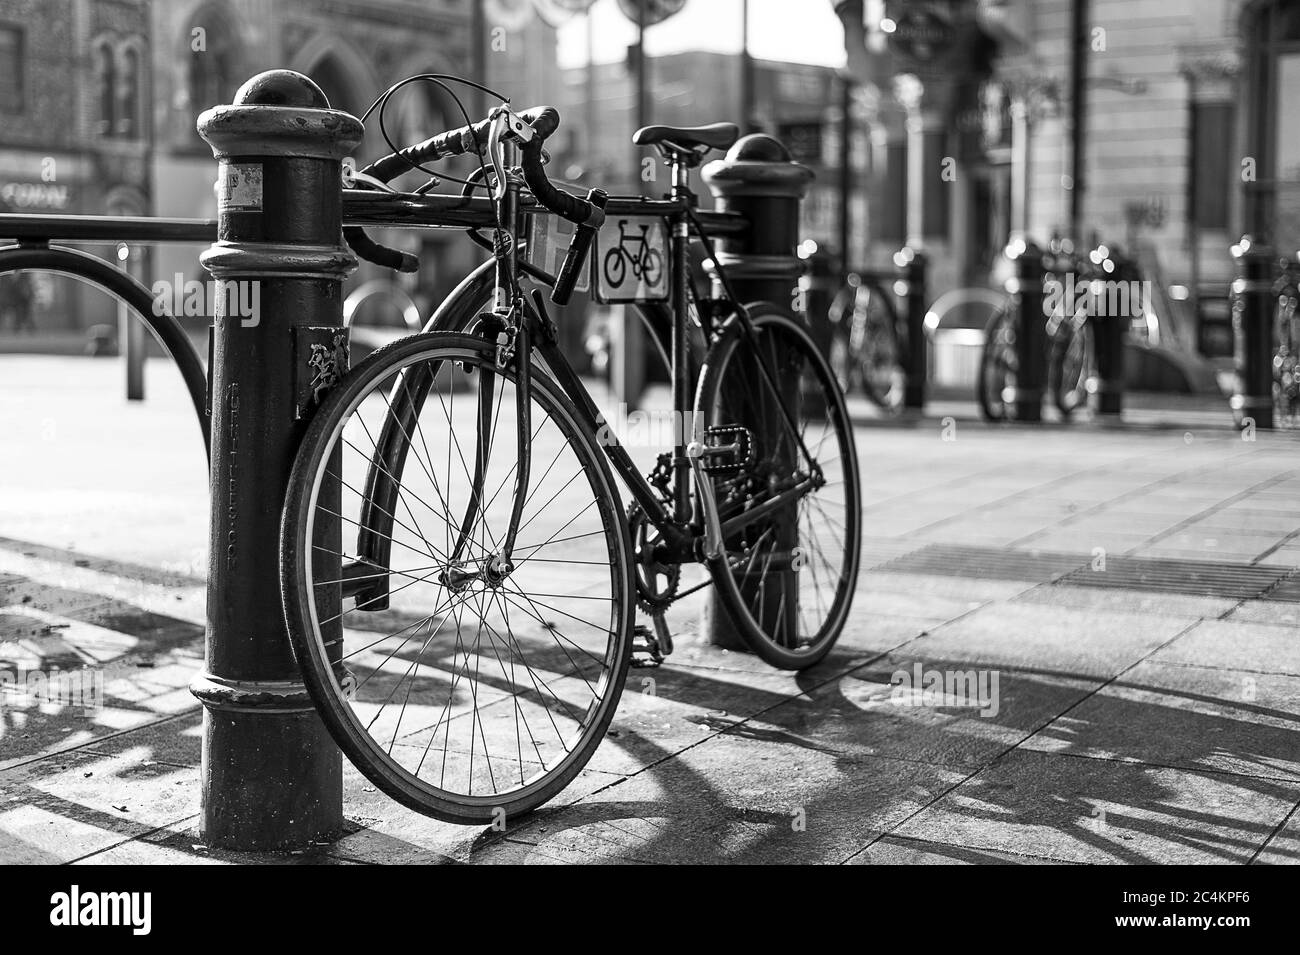 Tiro in scala di grigi di una bicicletta parcheggiata da un posto in la città Foto Stock